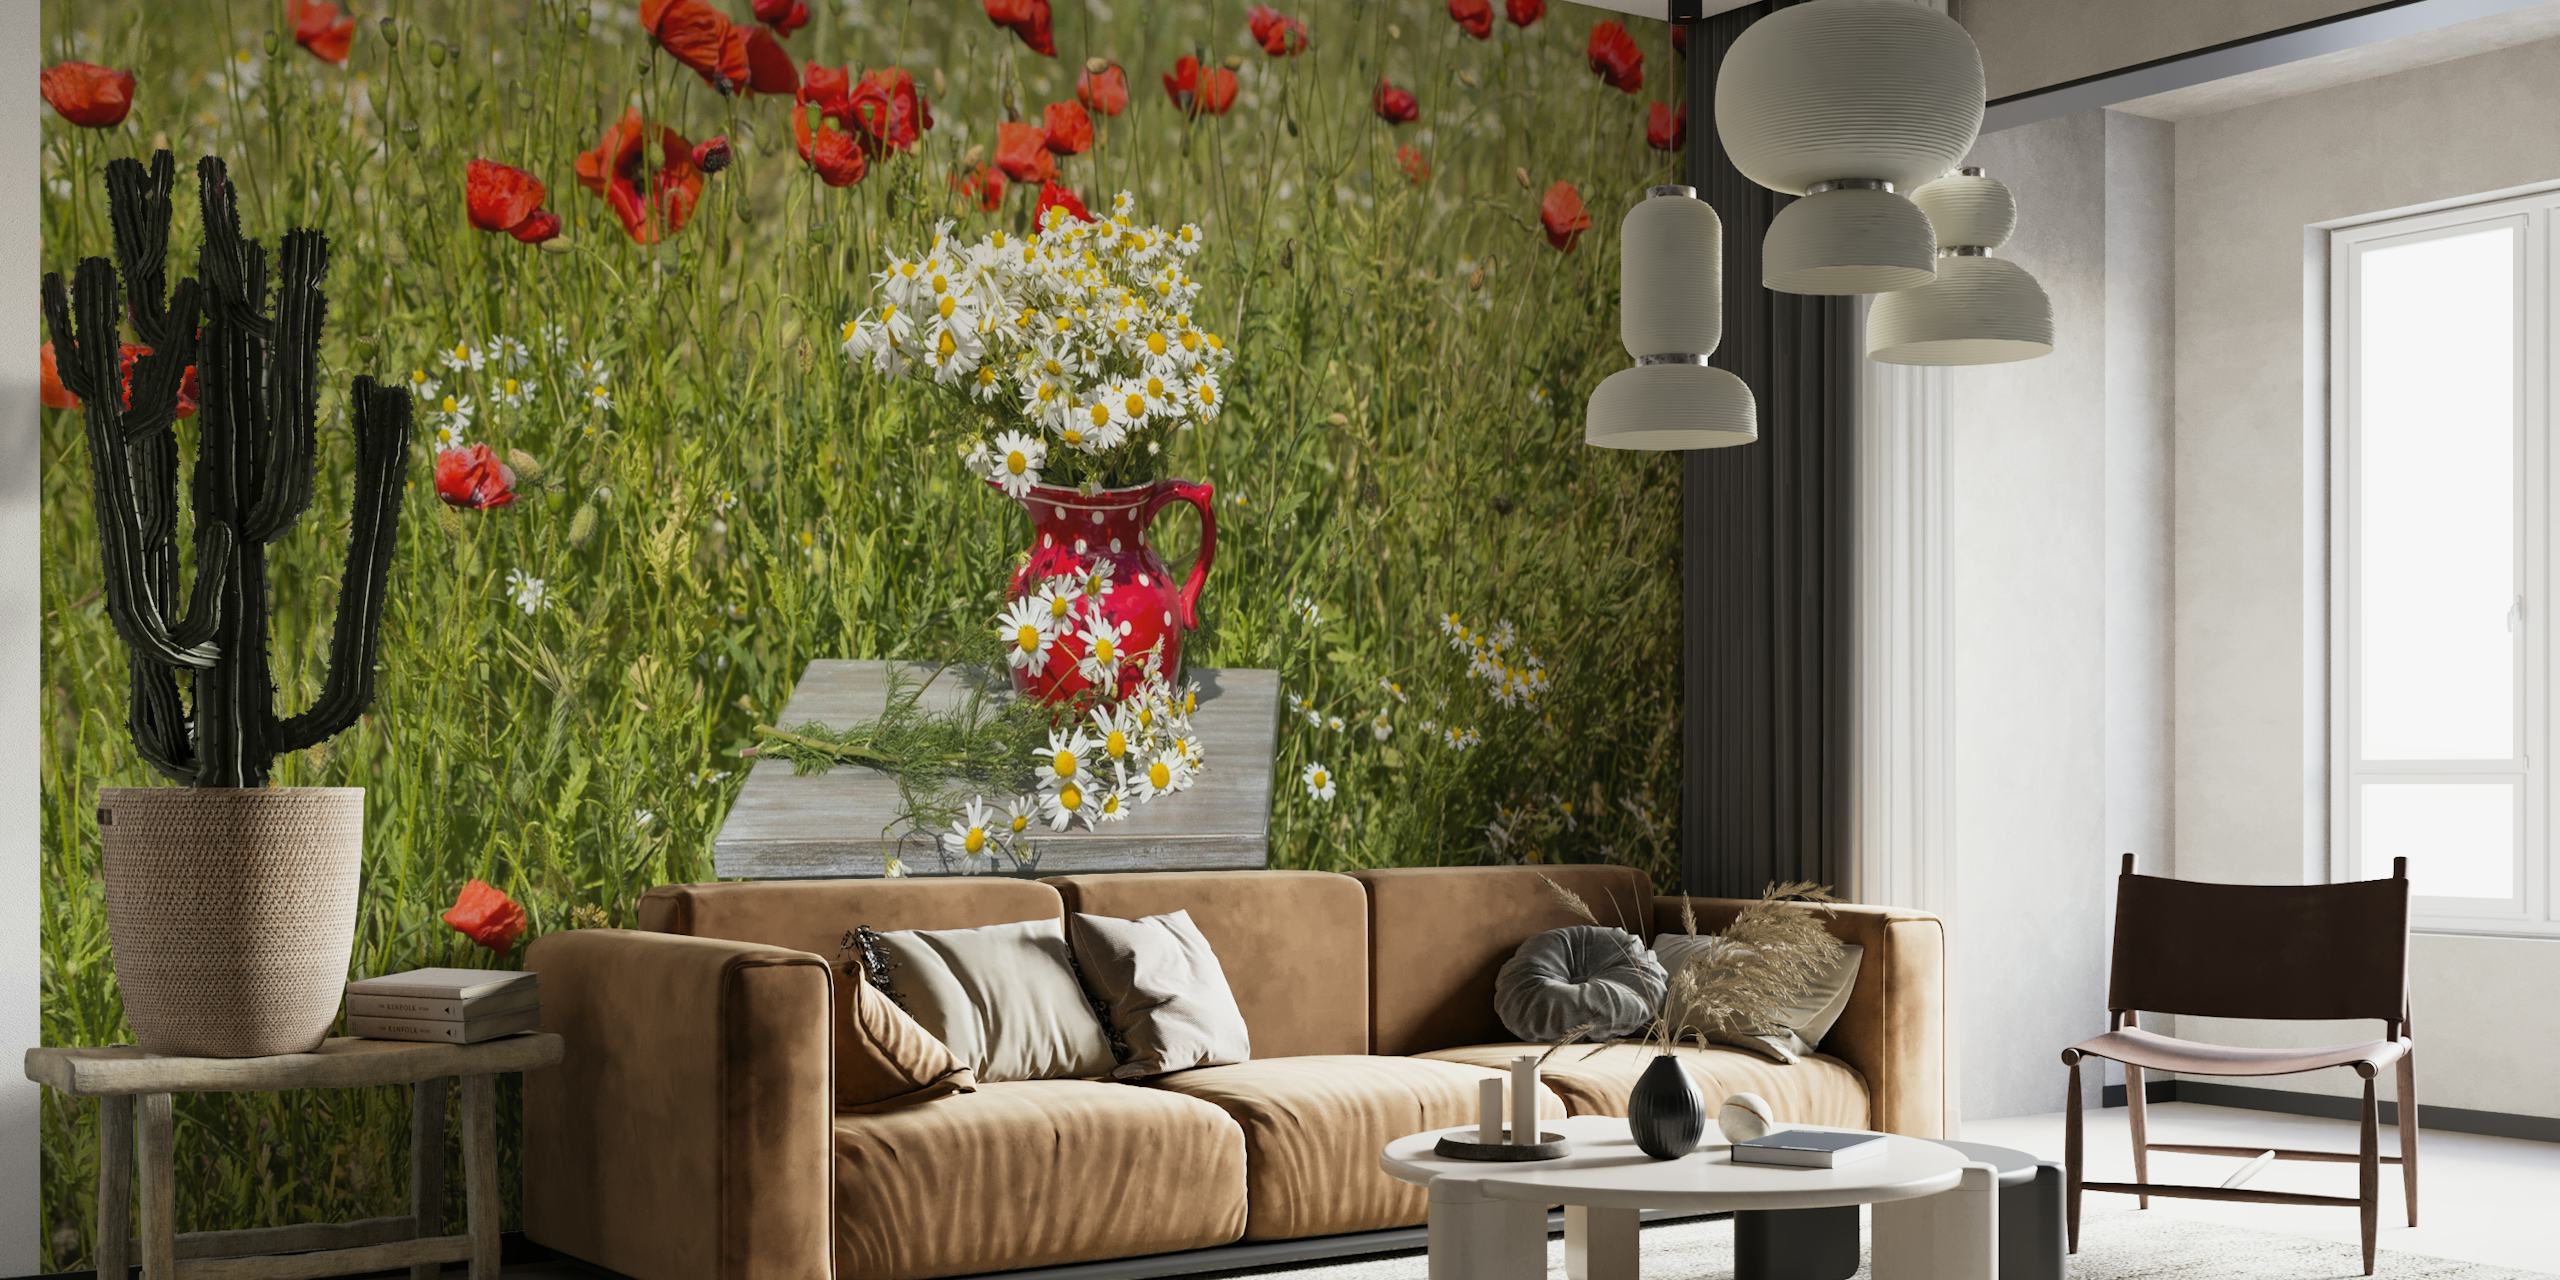 Um buquê de flores silvestres em um vaso em uma velha cadeira de madeira contra um prado com papoulas vermelhas.